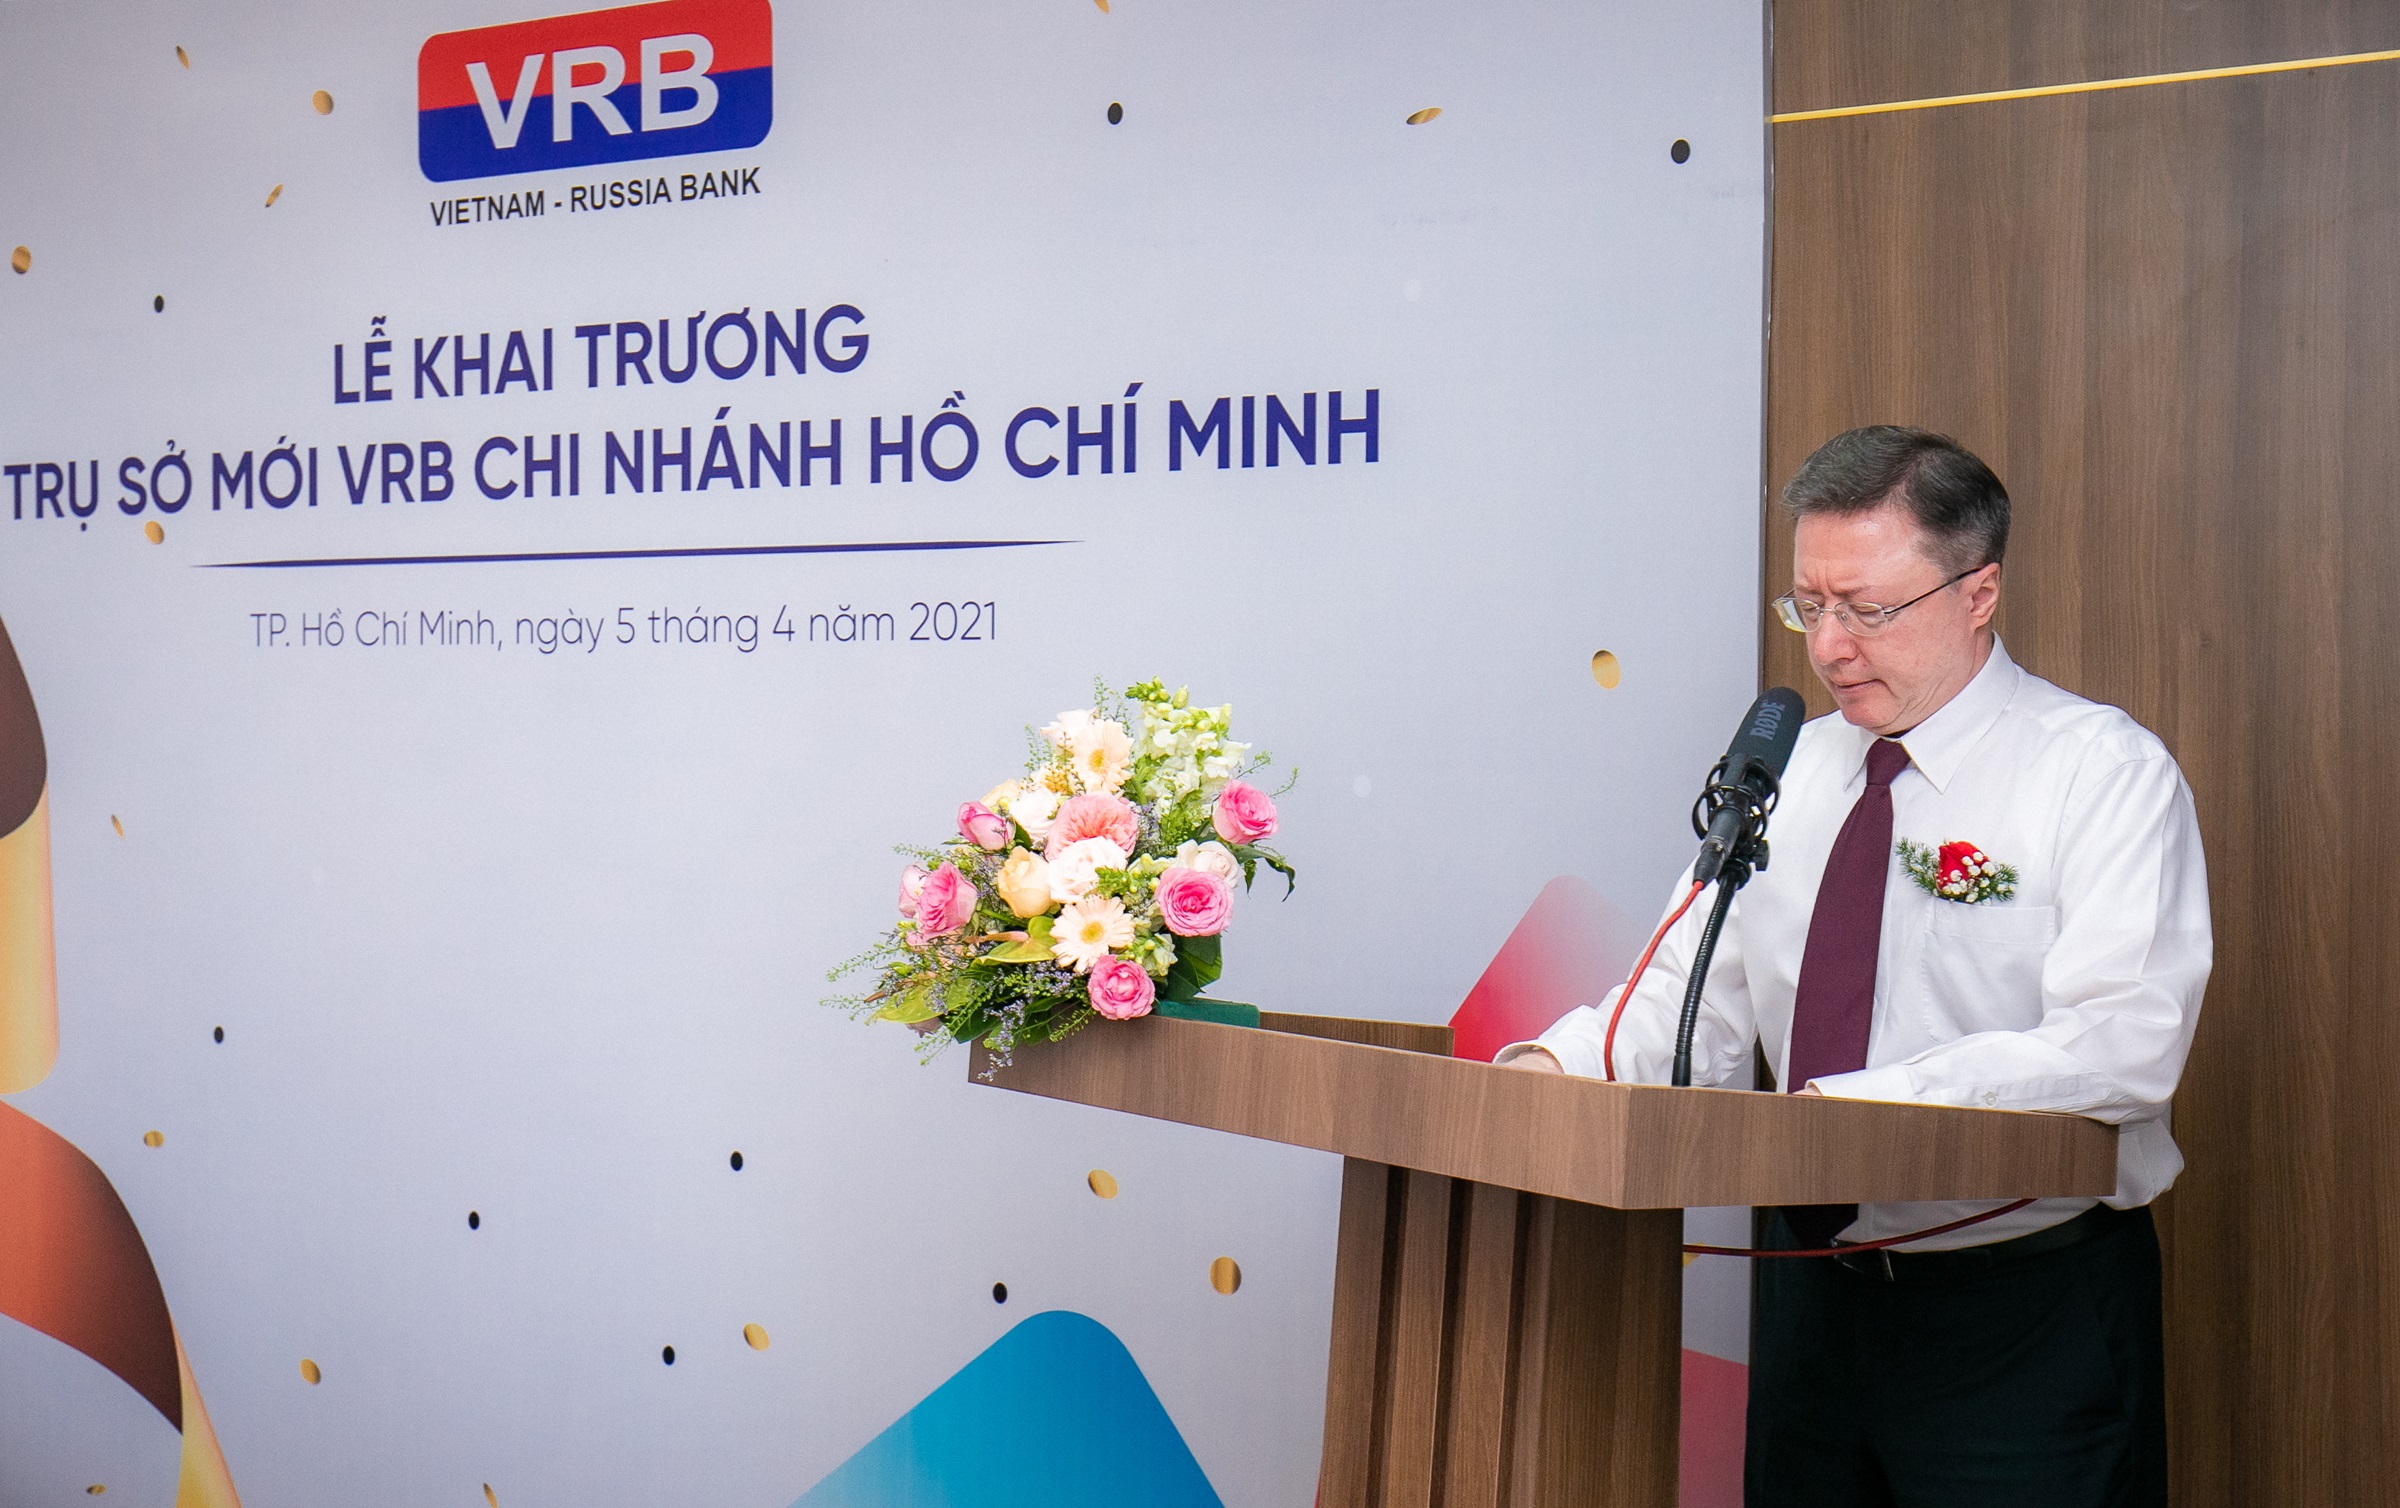 Ông Leonid Trifonov - Phó Tổng giám đốc thứ nhất, đại diện lãnh đạo VRB hội sở chính phát biểu tại sự kiện.